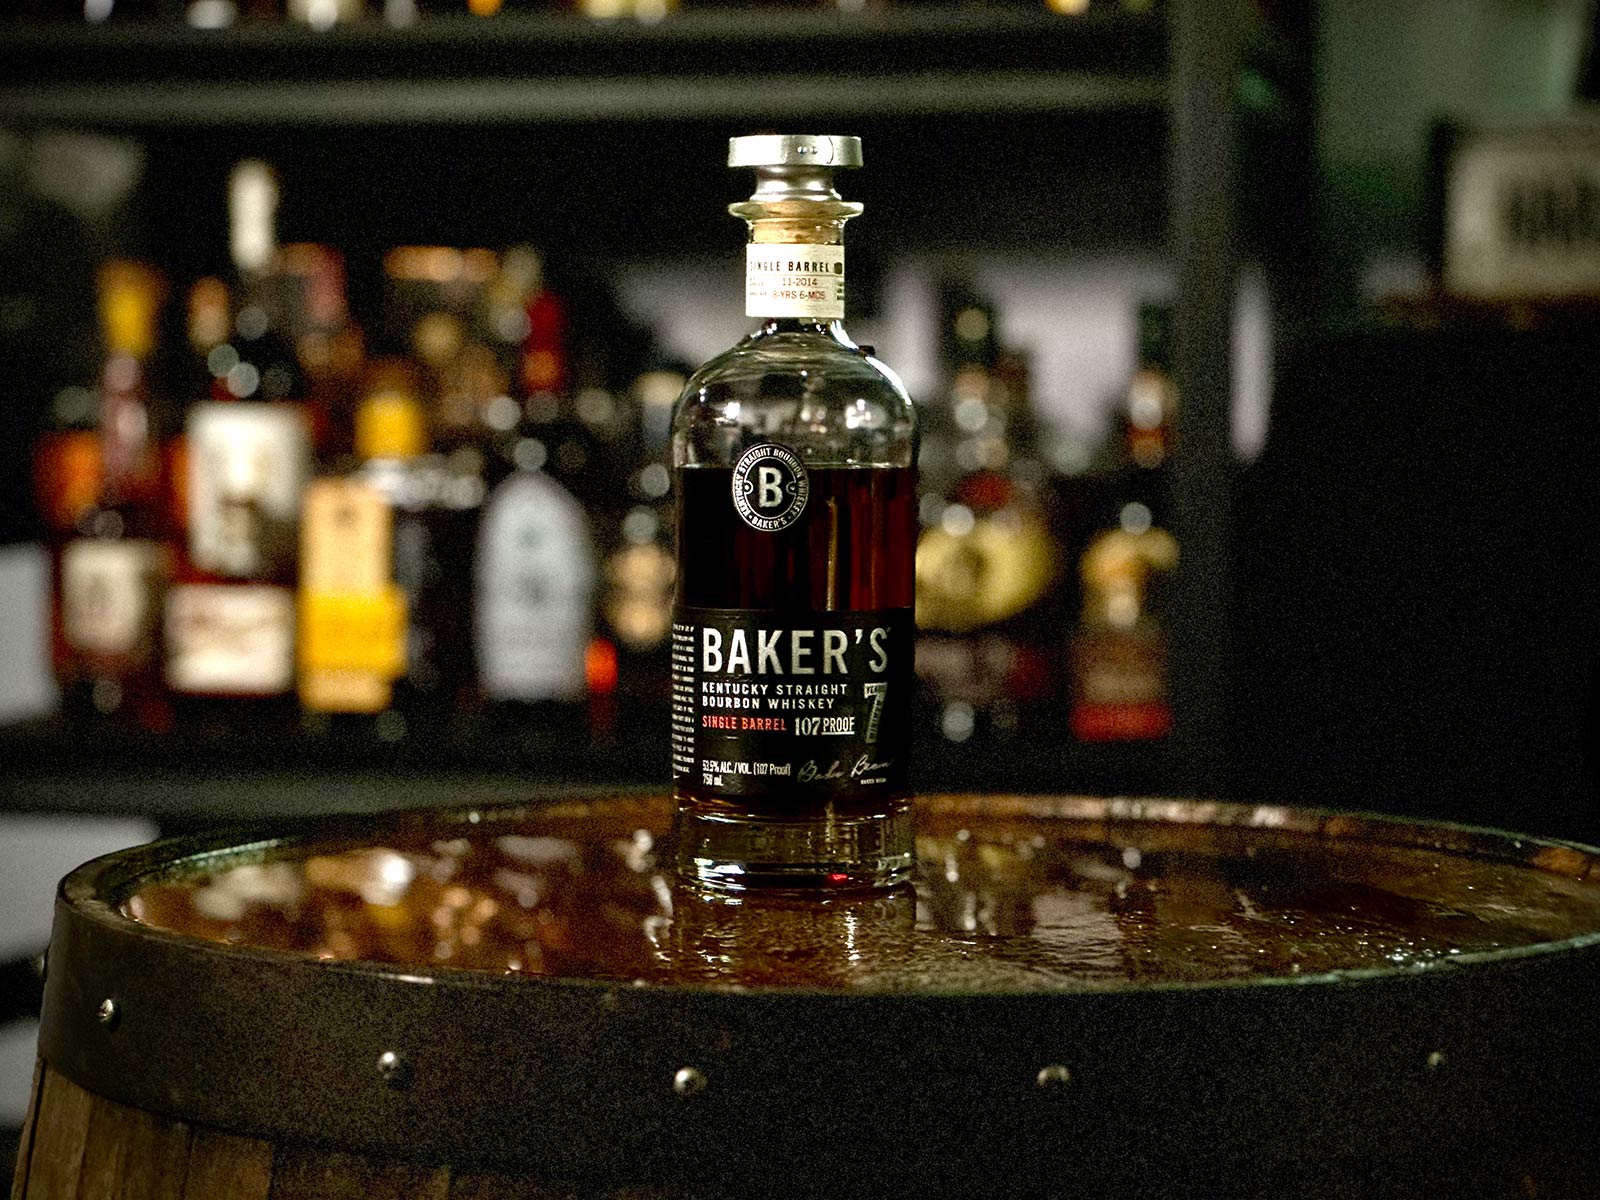 Baker's 7 Straight Bourbon Whiskey
